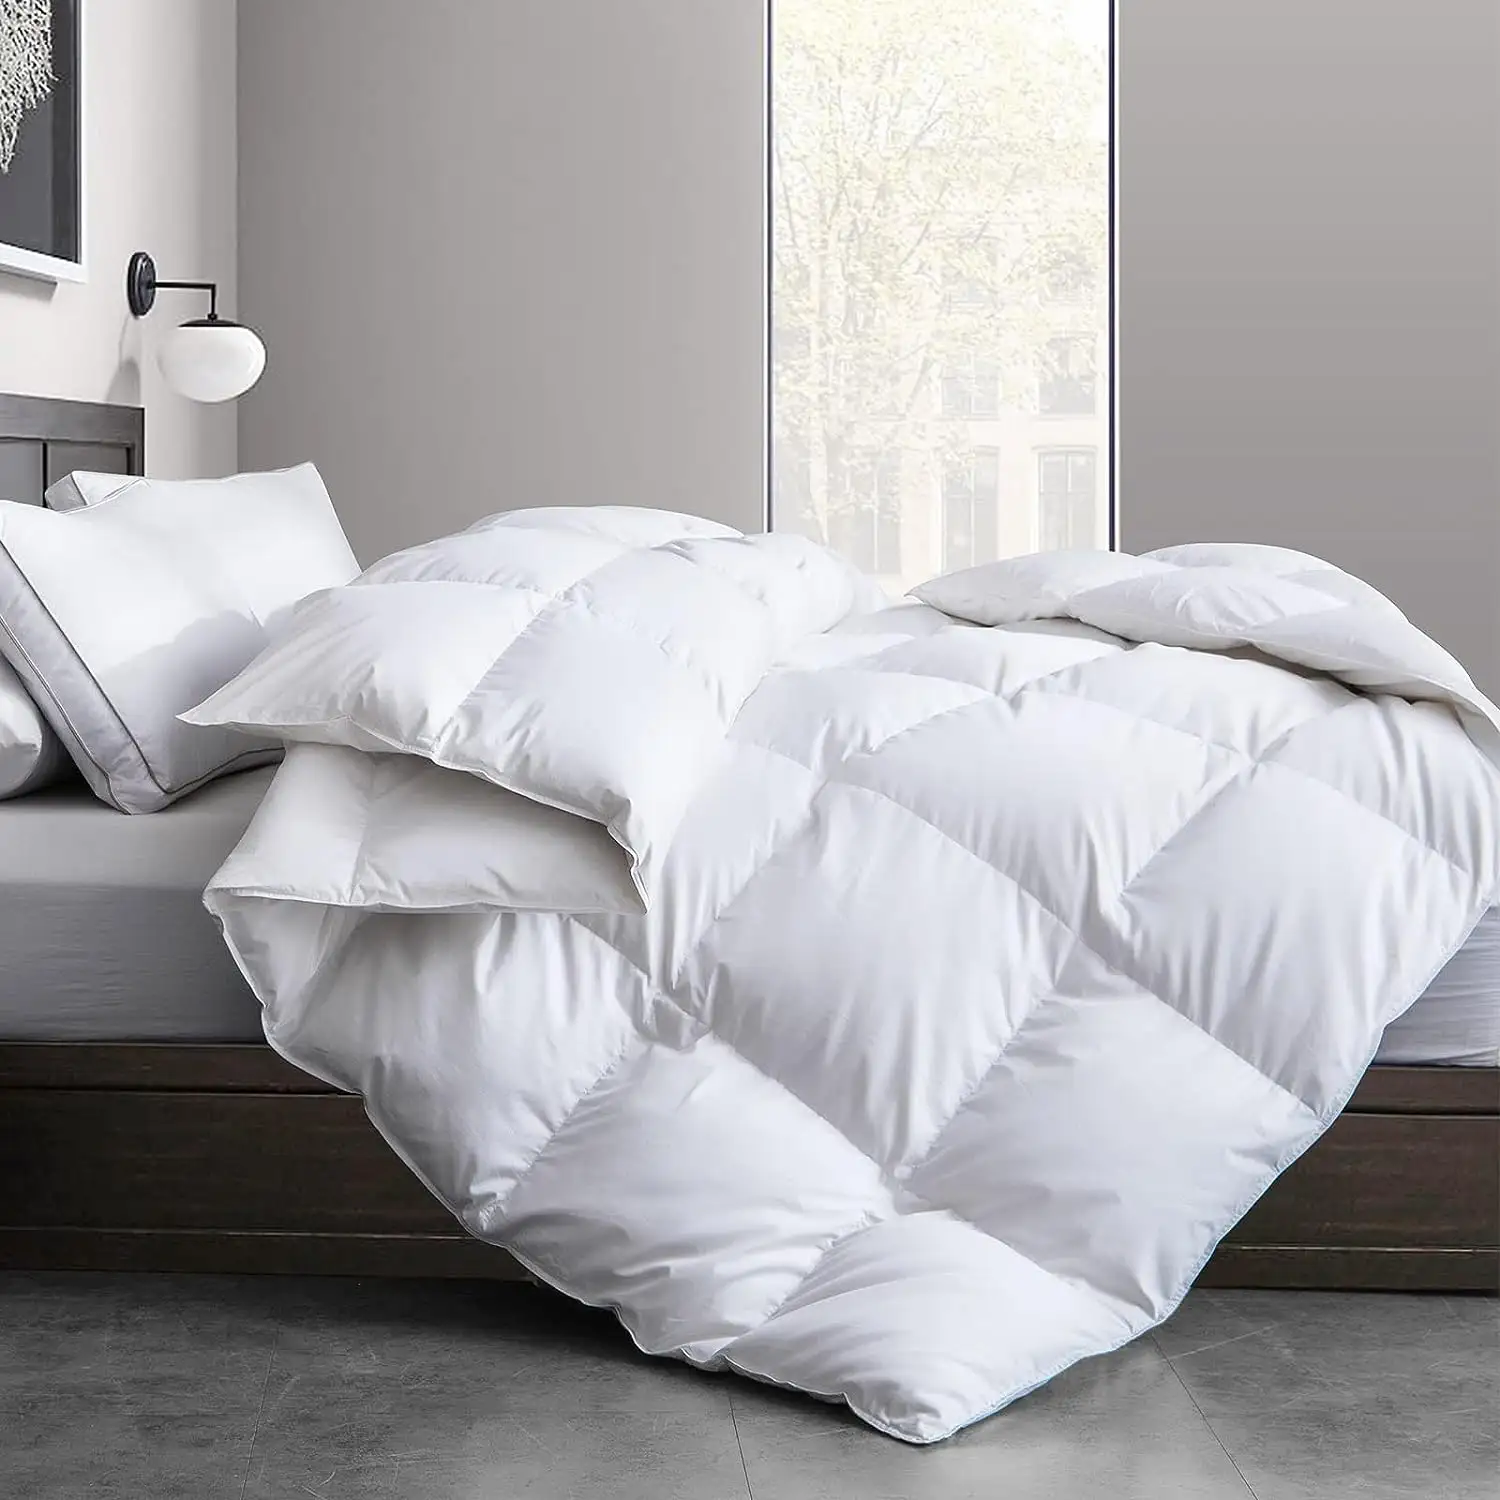 100% Algodão Tecido Cama Linho Comforter Set Edredão Microfibra Enchimento Branco Hotel Quilt